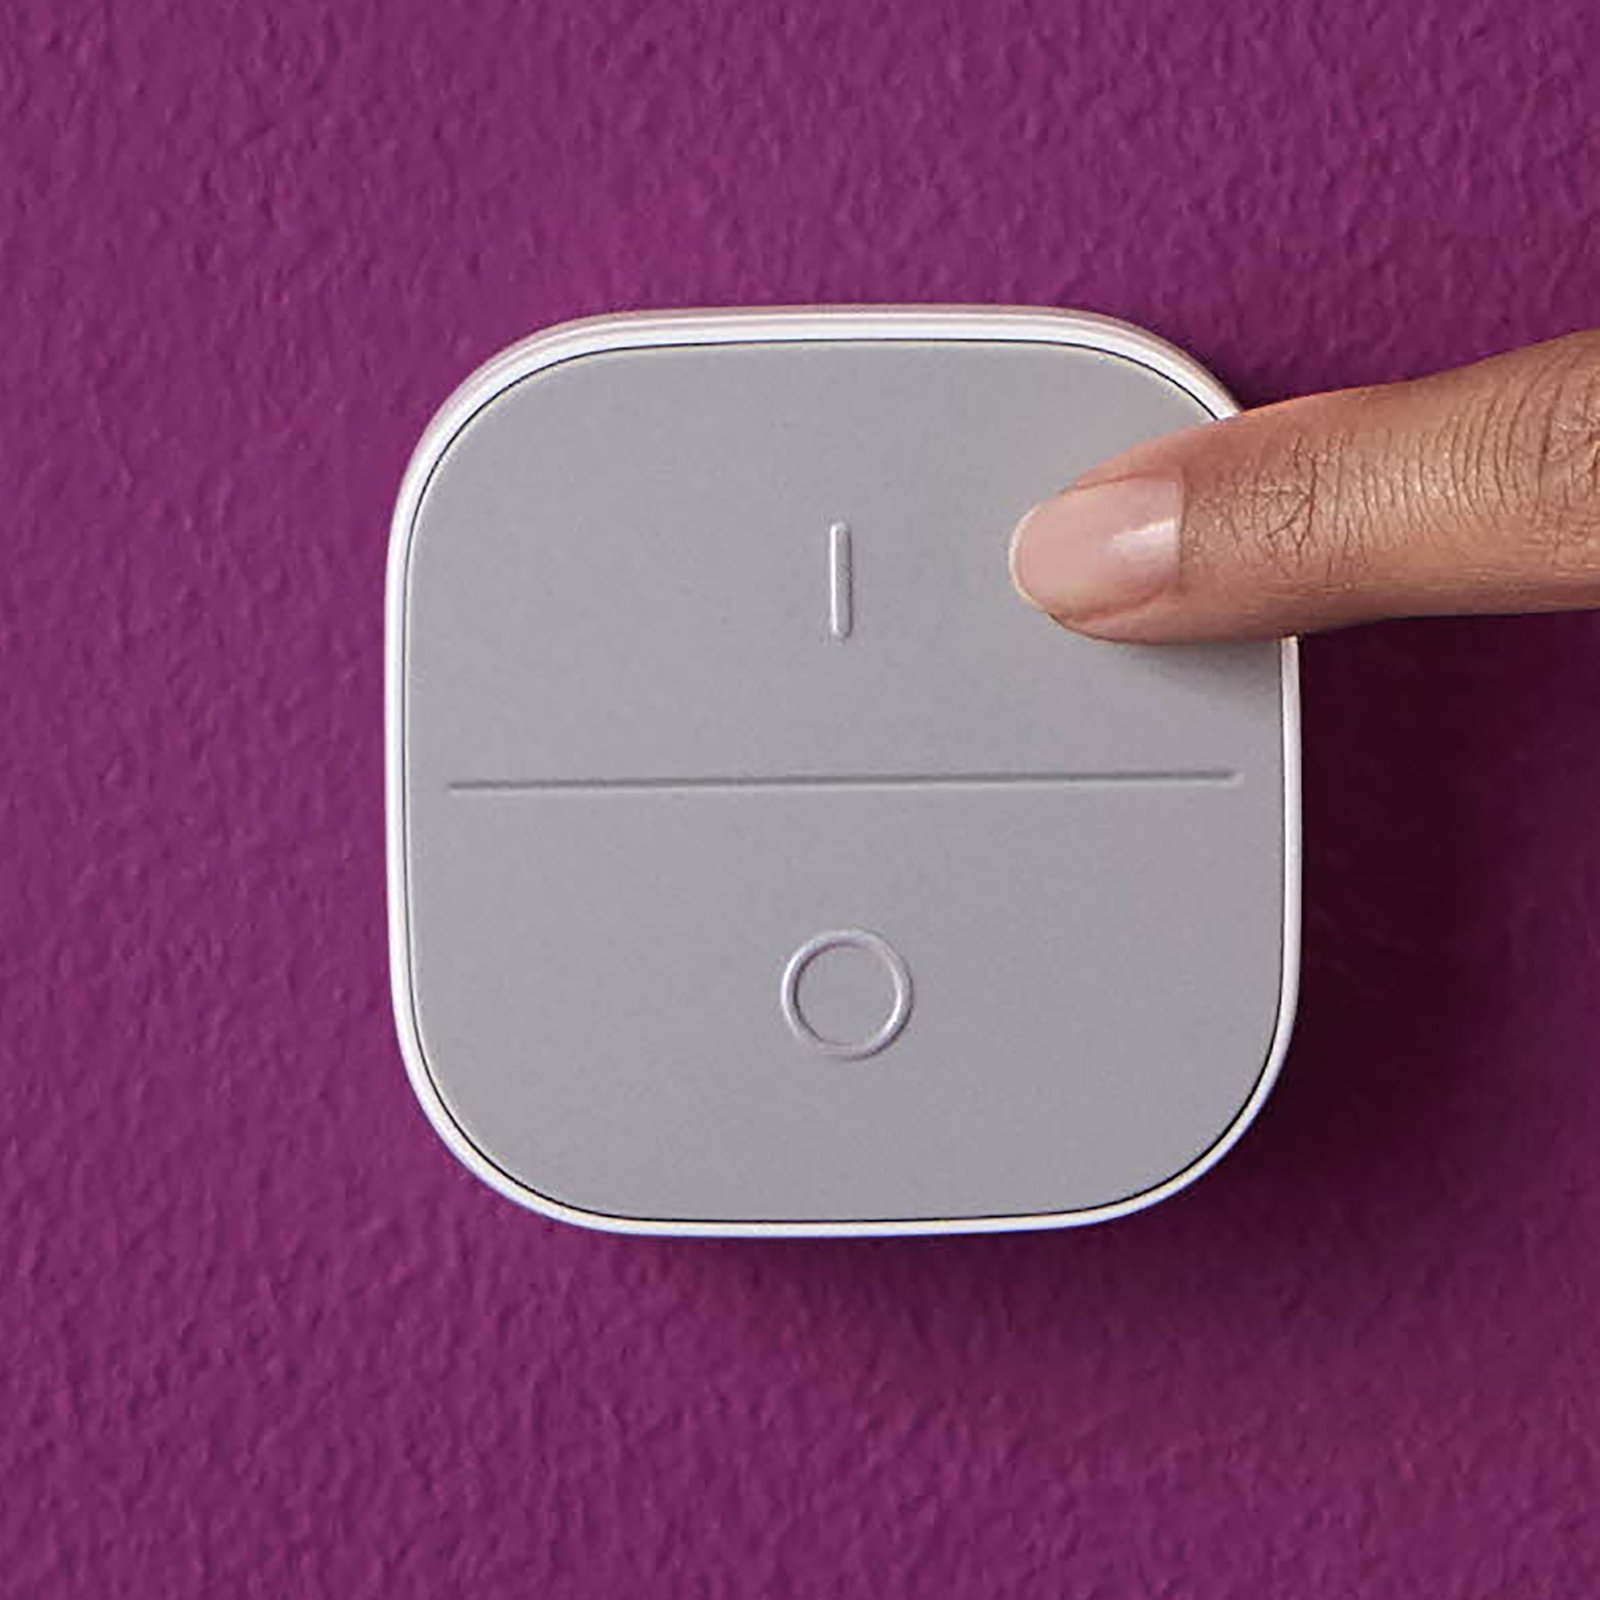 WiZ Portable Button, mobilní nástěnný vypínač